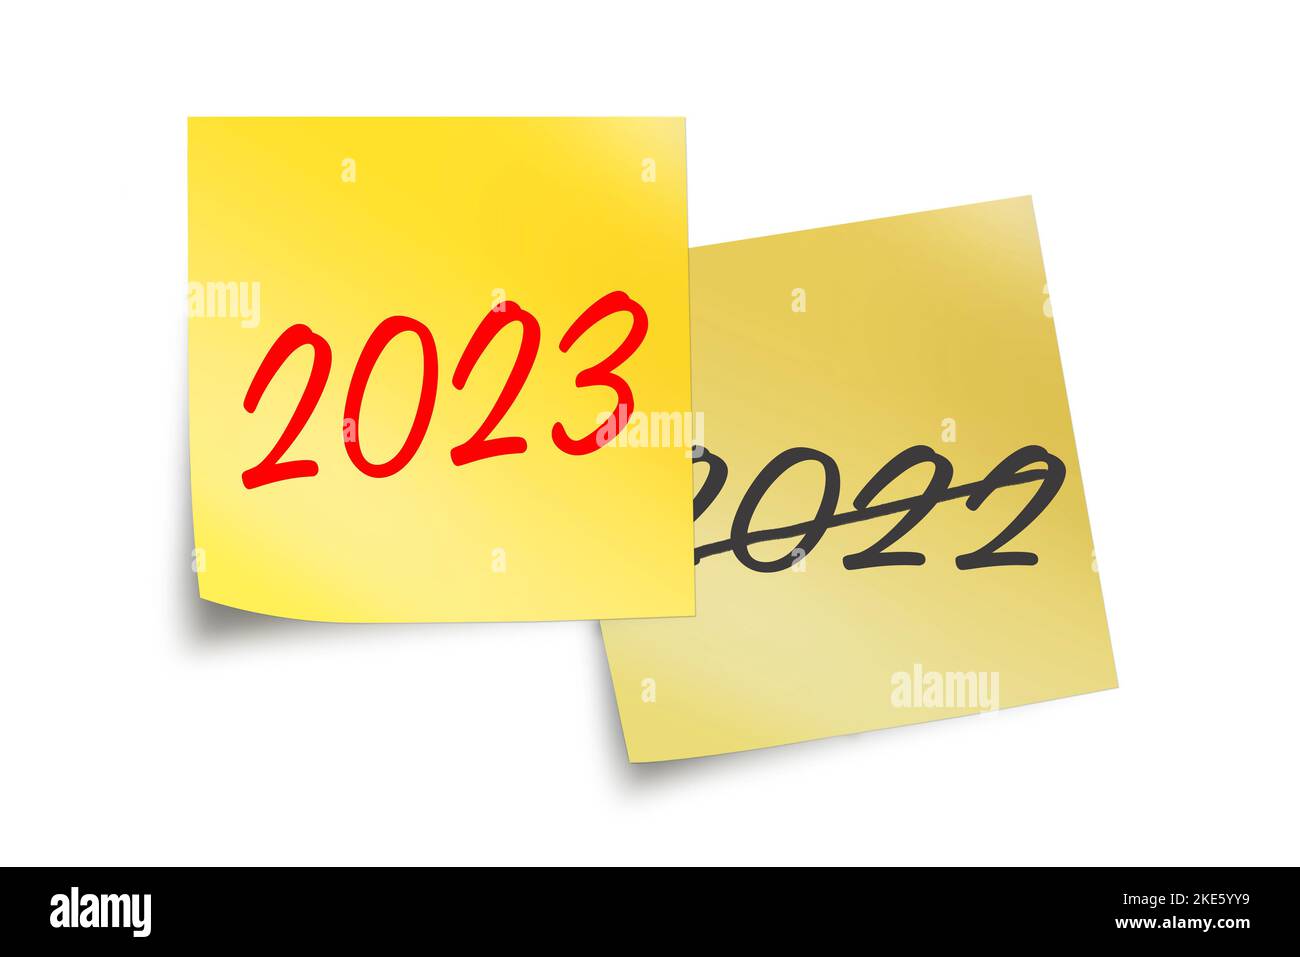 2023 und 2022 geschrieben auf gelben Haftnotizen isoliert auf weißer Geschäftsbilderung zum neuen Jahr Stockfoto